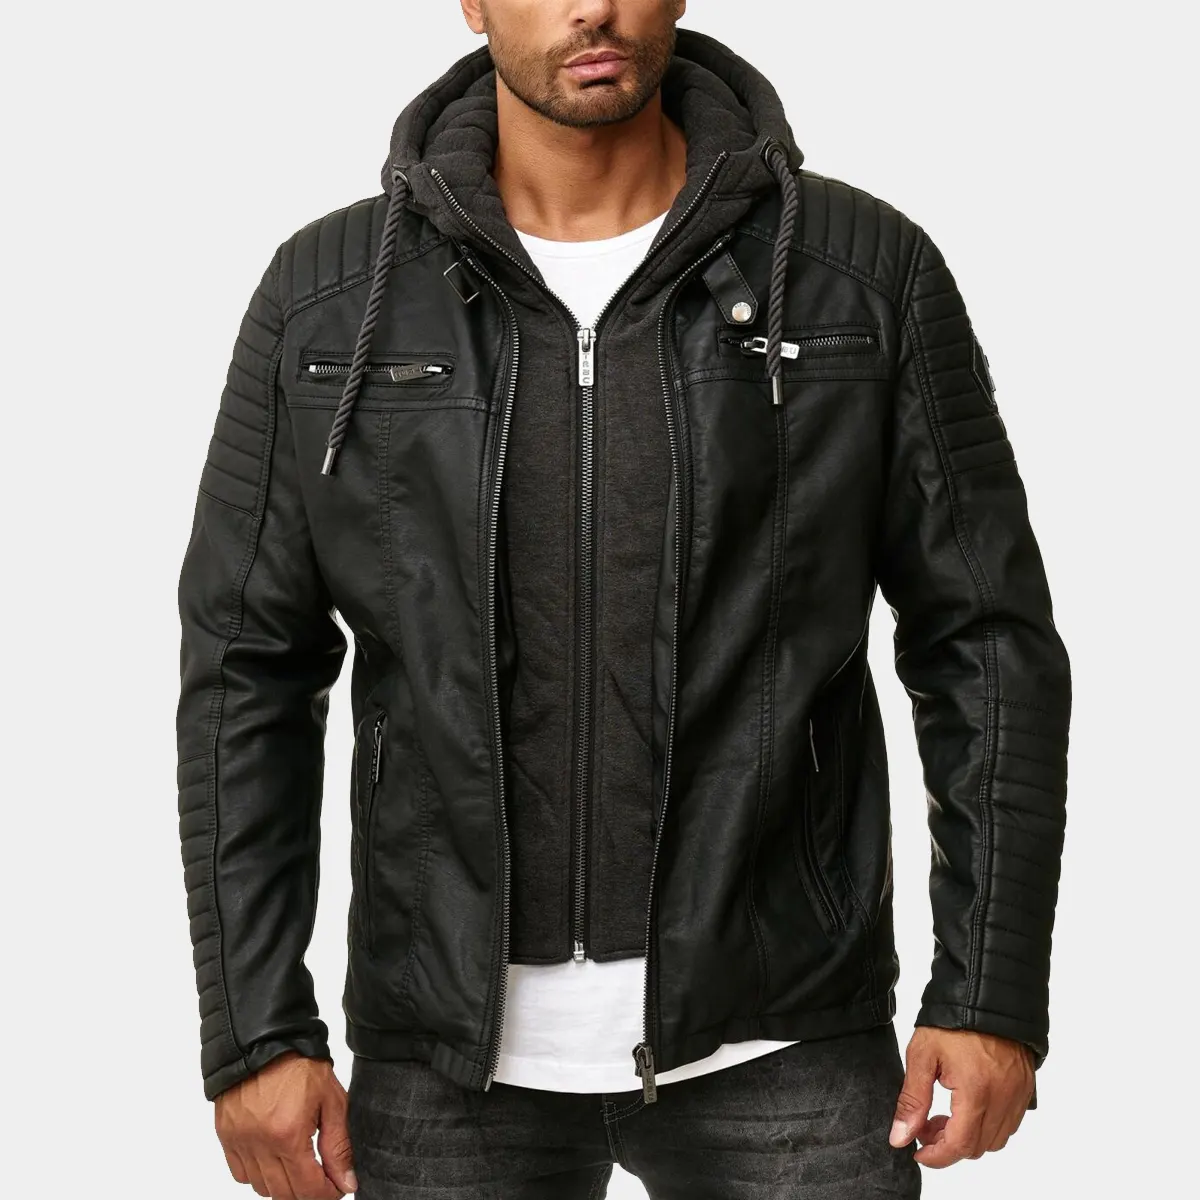 Lamb Leather Biker Jacket with detachable Hood